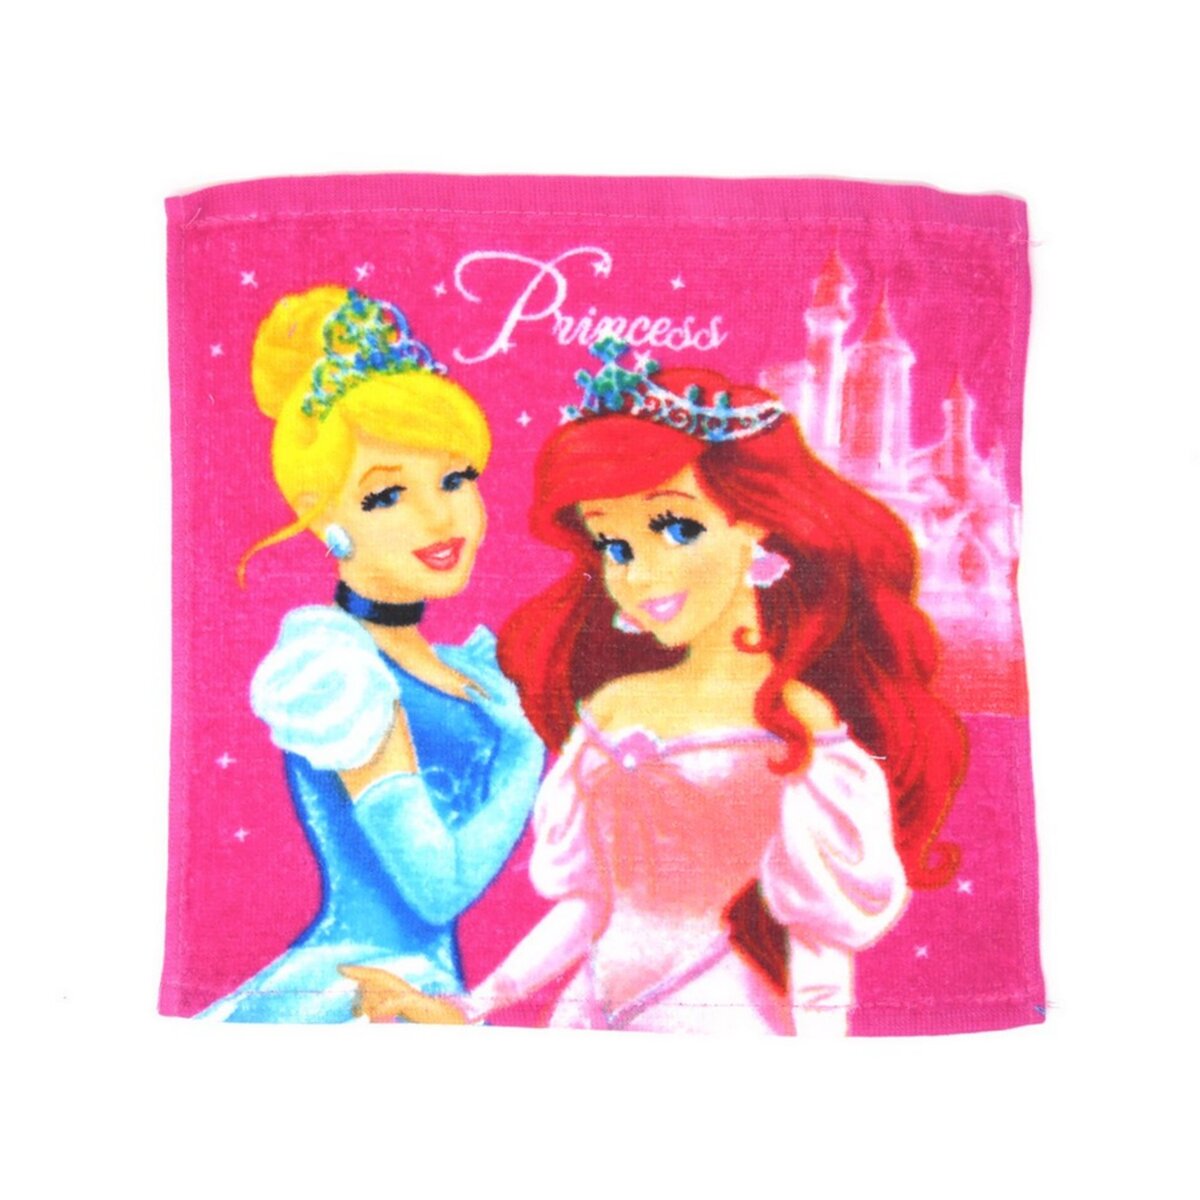  1 serviette Disney, Princesse essuie main 30x30cm coton ecole